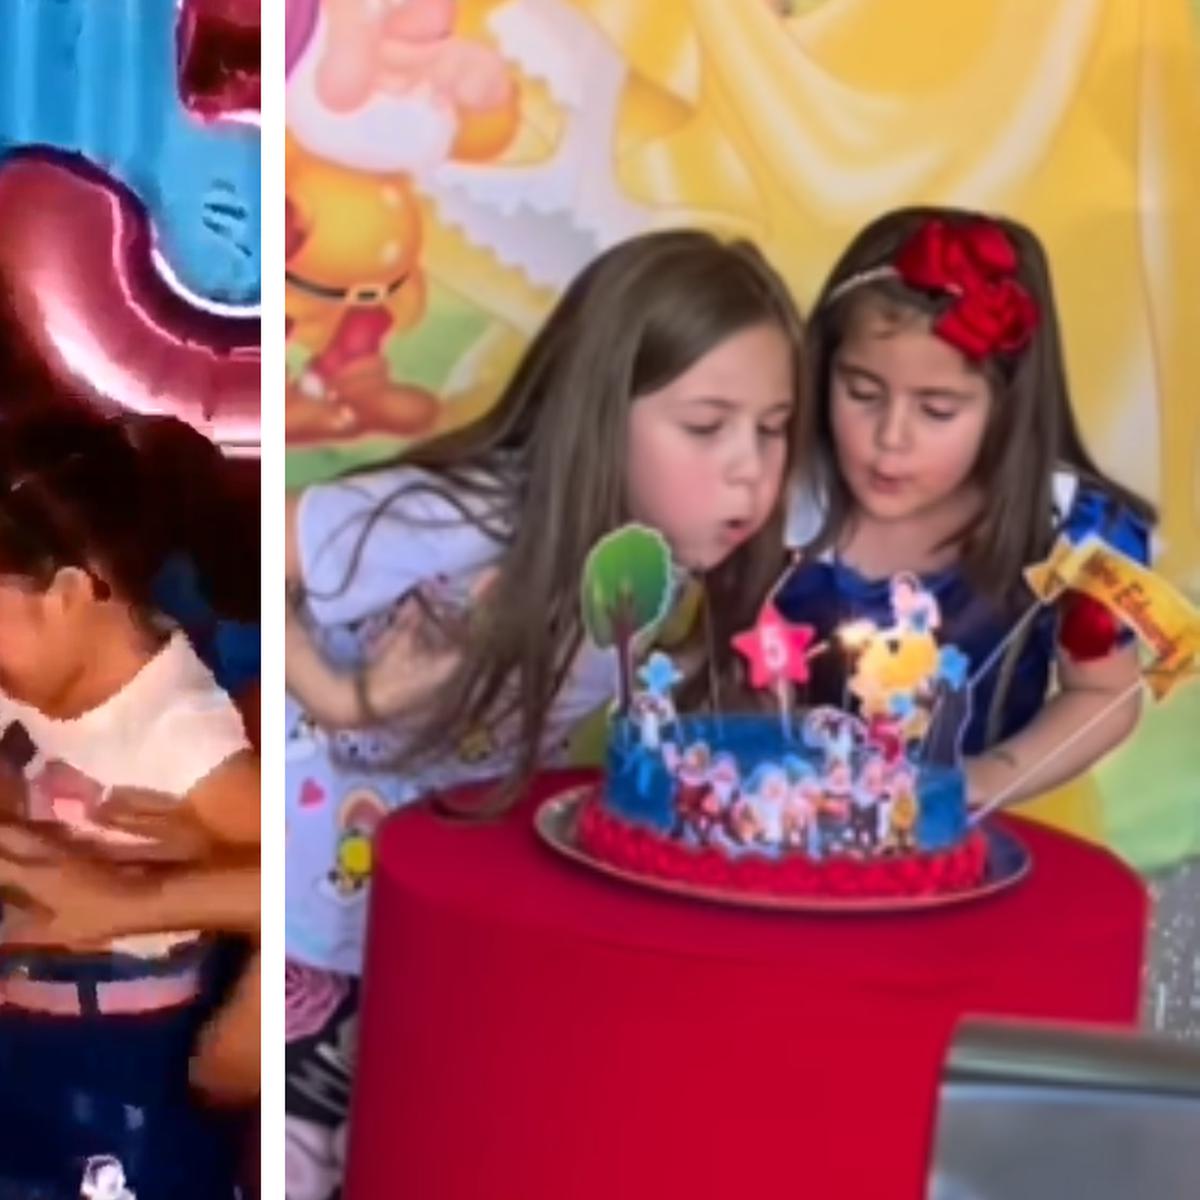 TikTok viral: Niño apaga las velas de su torta de cumpleaños de